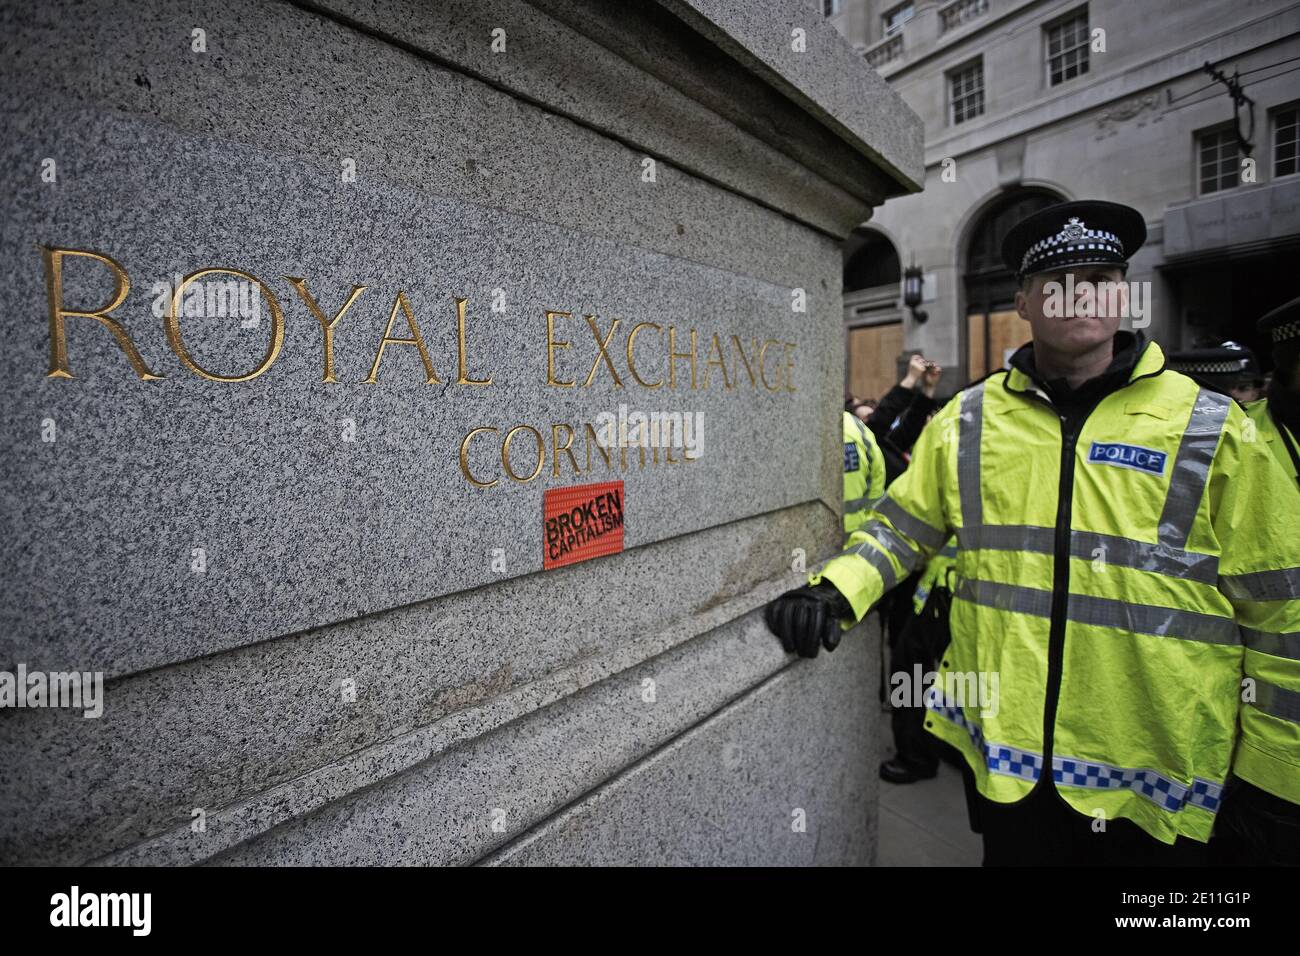 GRANDE-BRETAGNE / Angleterre / Londres / la police protège le Royal Exchange lors des manifestations de G20 dans la ville de Londres sur 1 avril 2009 à Londres, Royaume-Uni. Banque D'Images